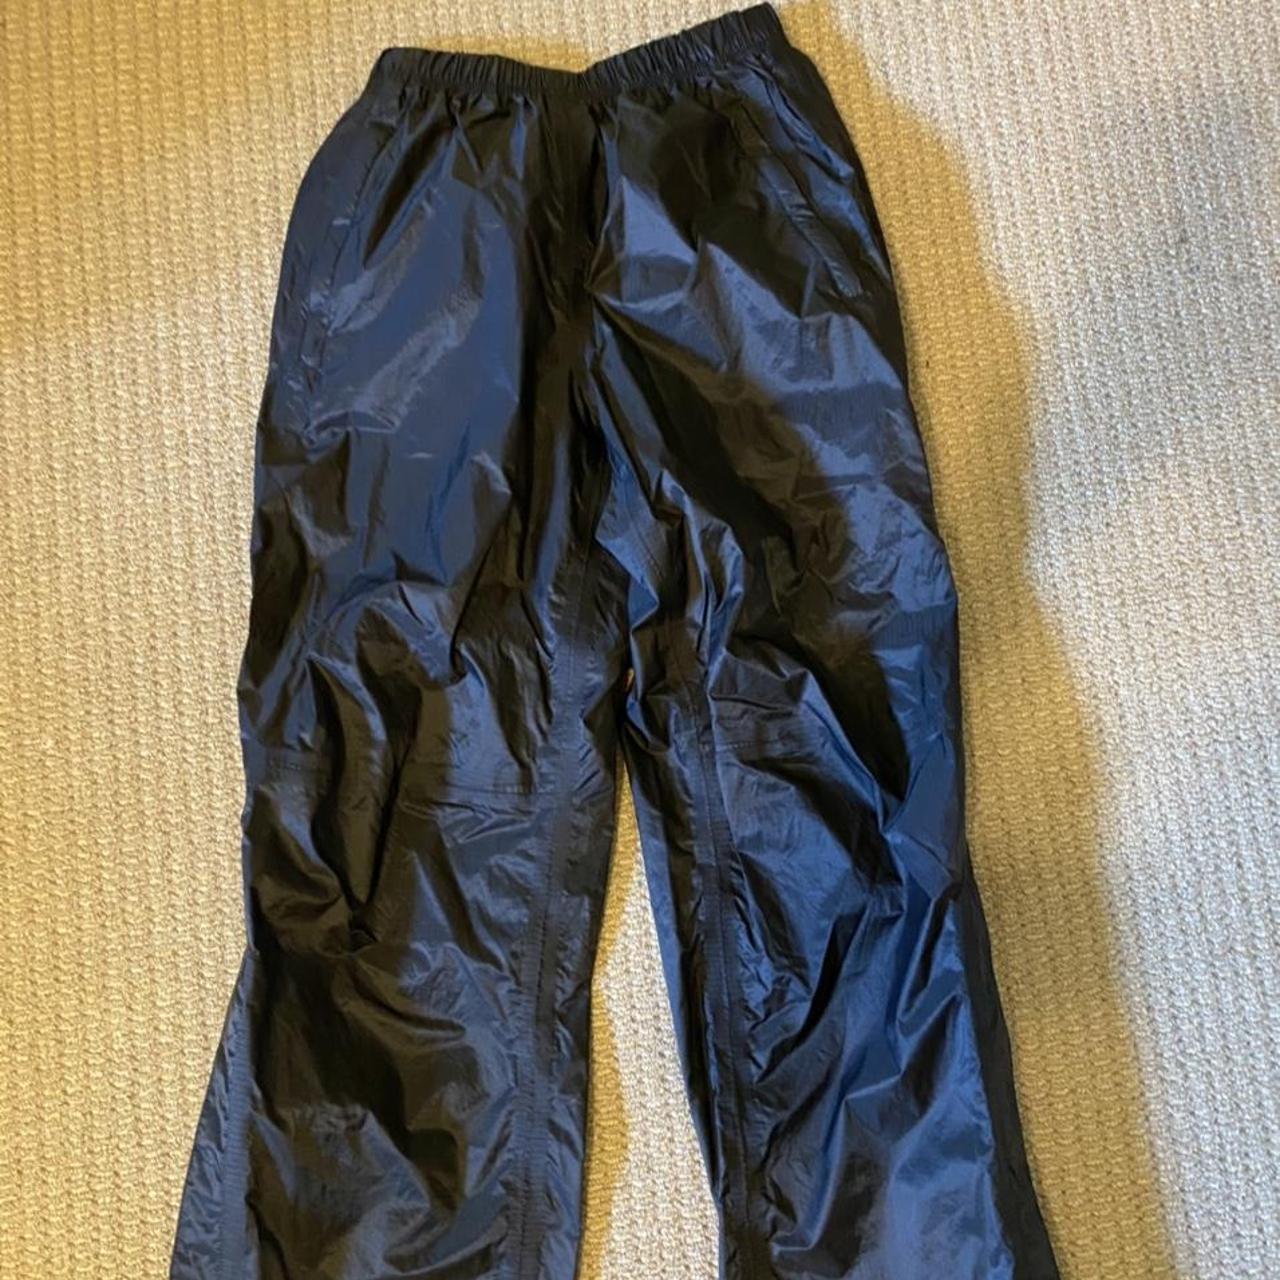 Product Image 1 - Black Hi-Tec rain pants. size